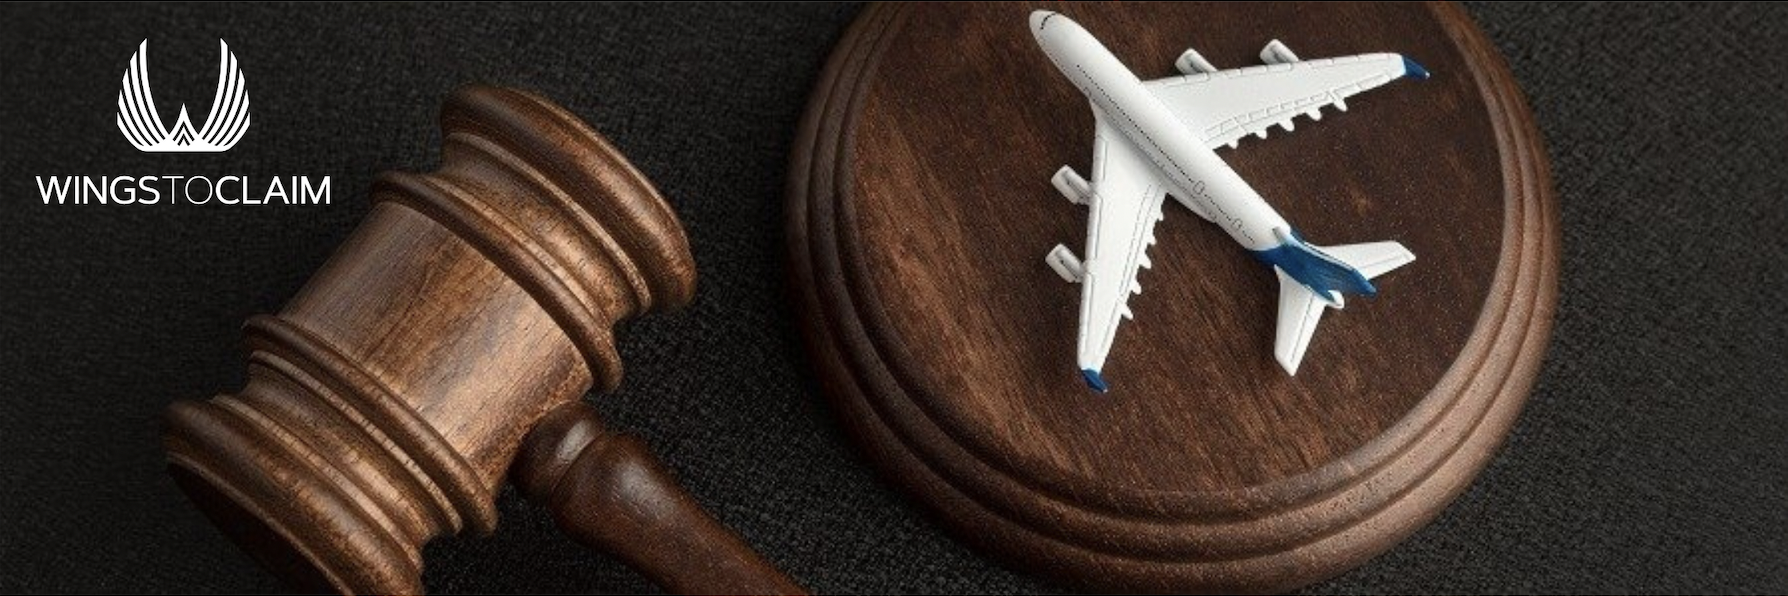 El Reglamento Europeo nº 261/2004 sobre los derechos de los pasajeros de avión